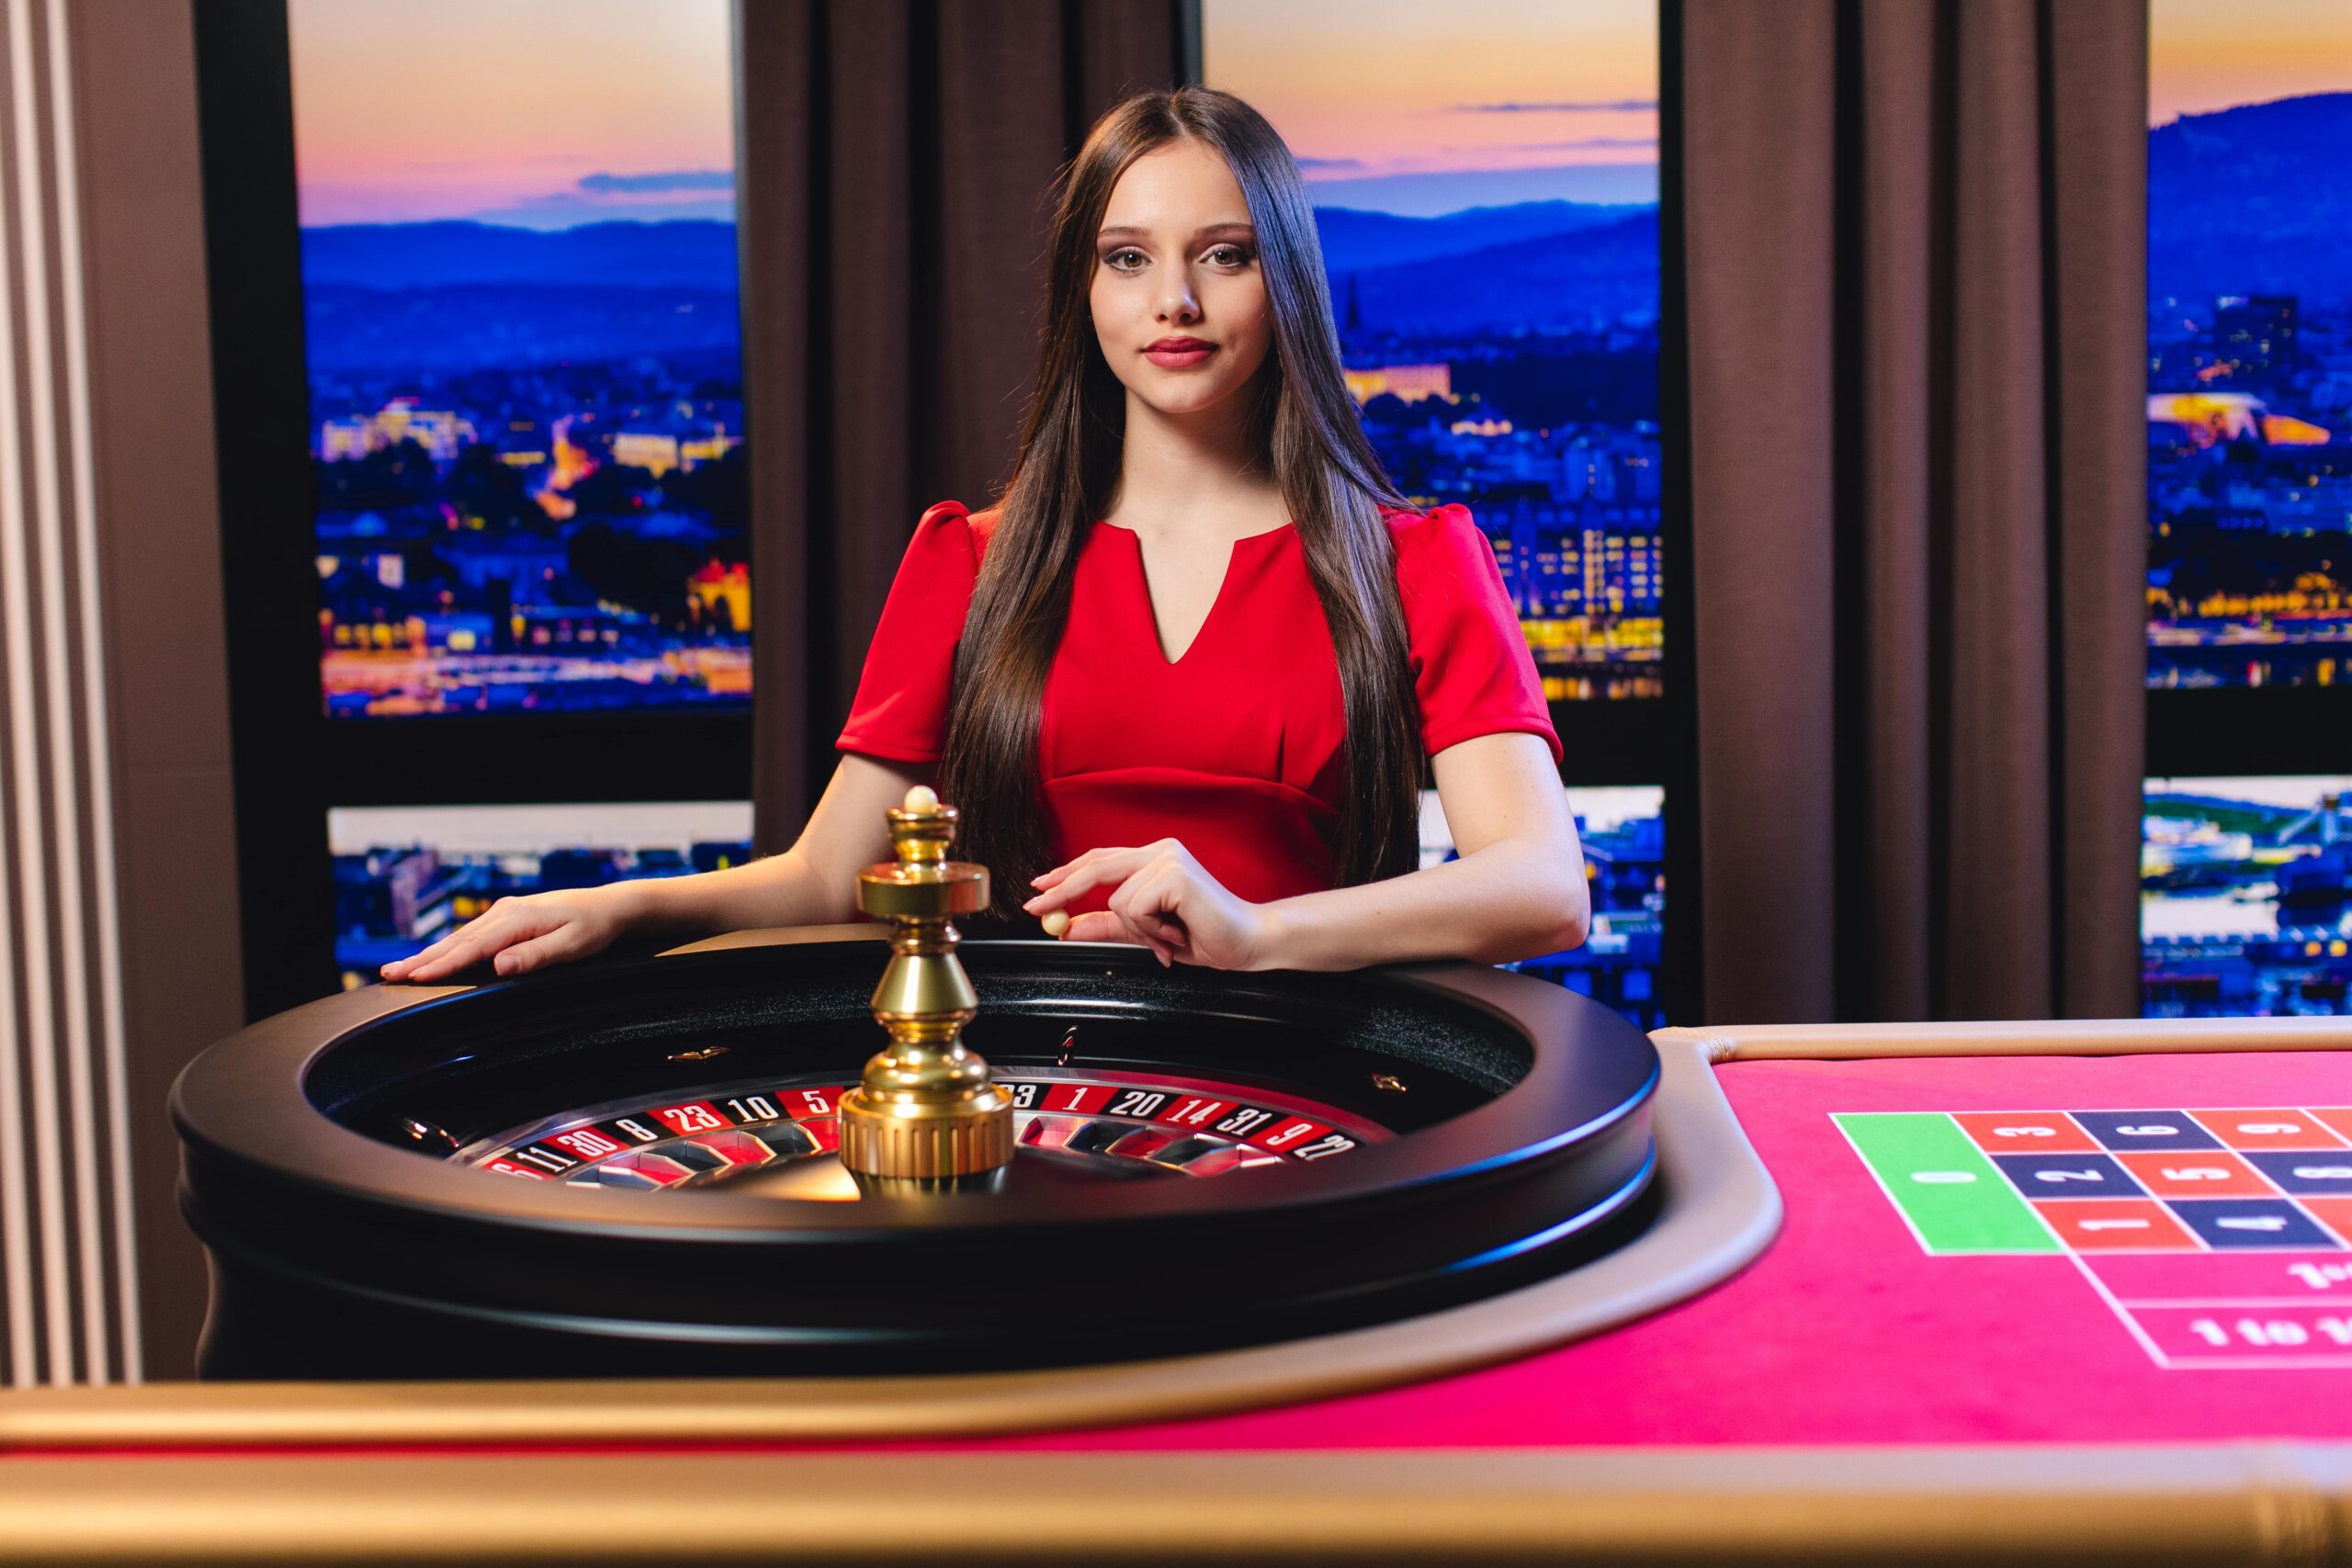 online live casino game gameplay malta norwegian roulette brunette female dealer